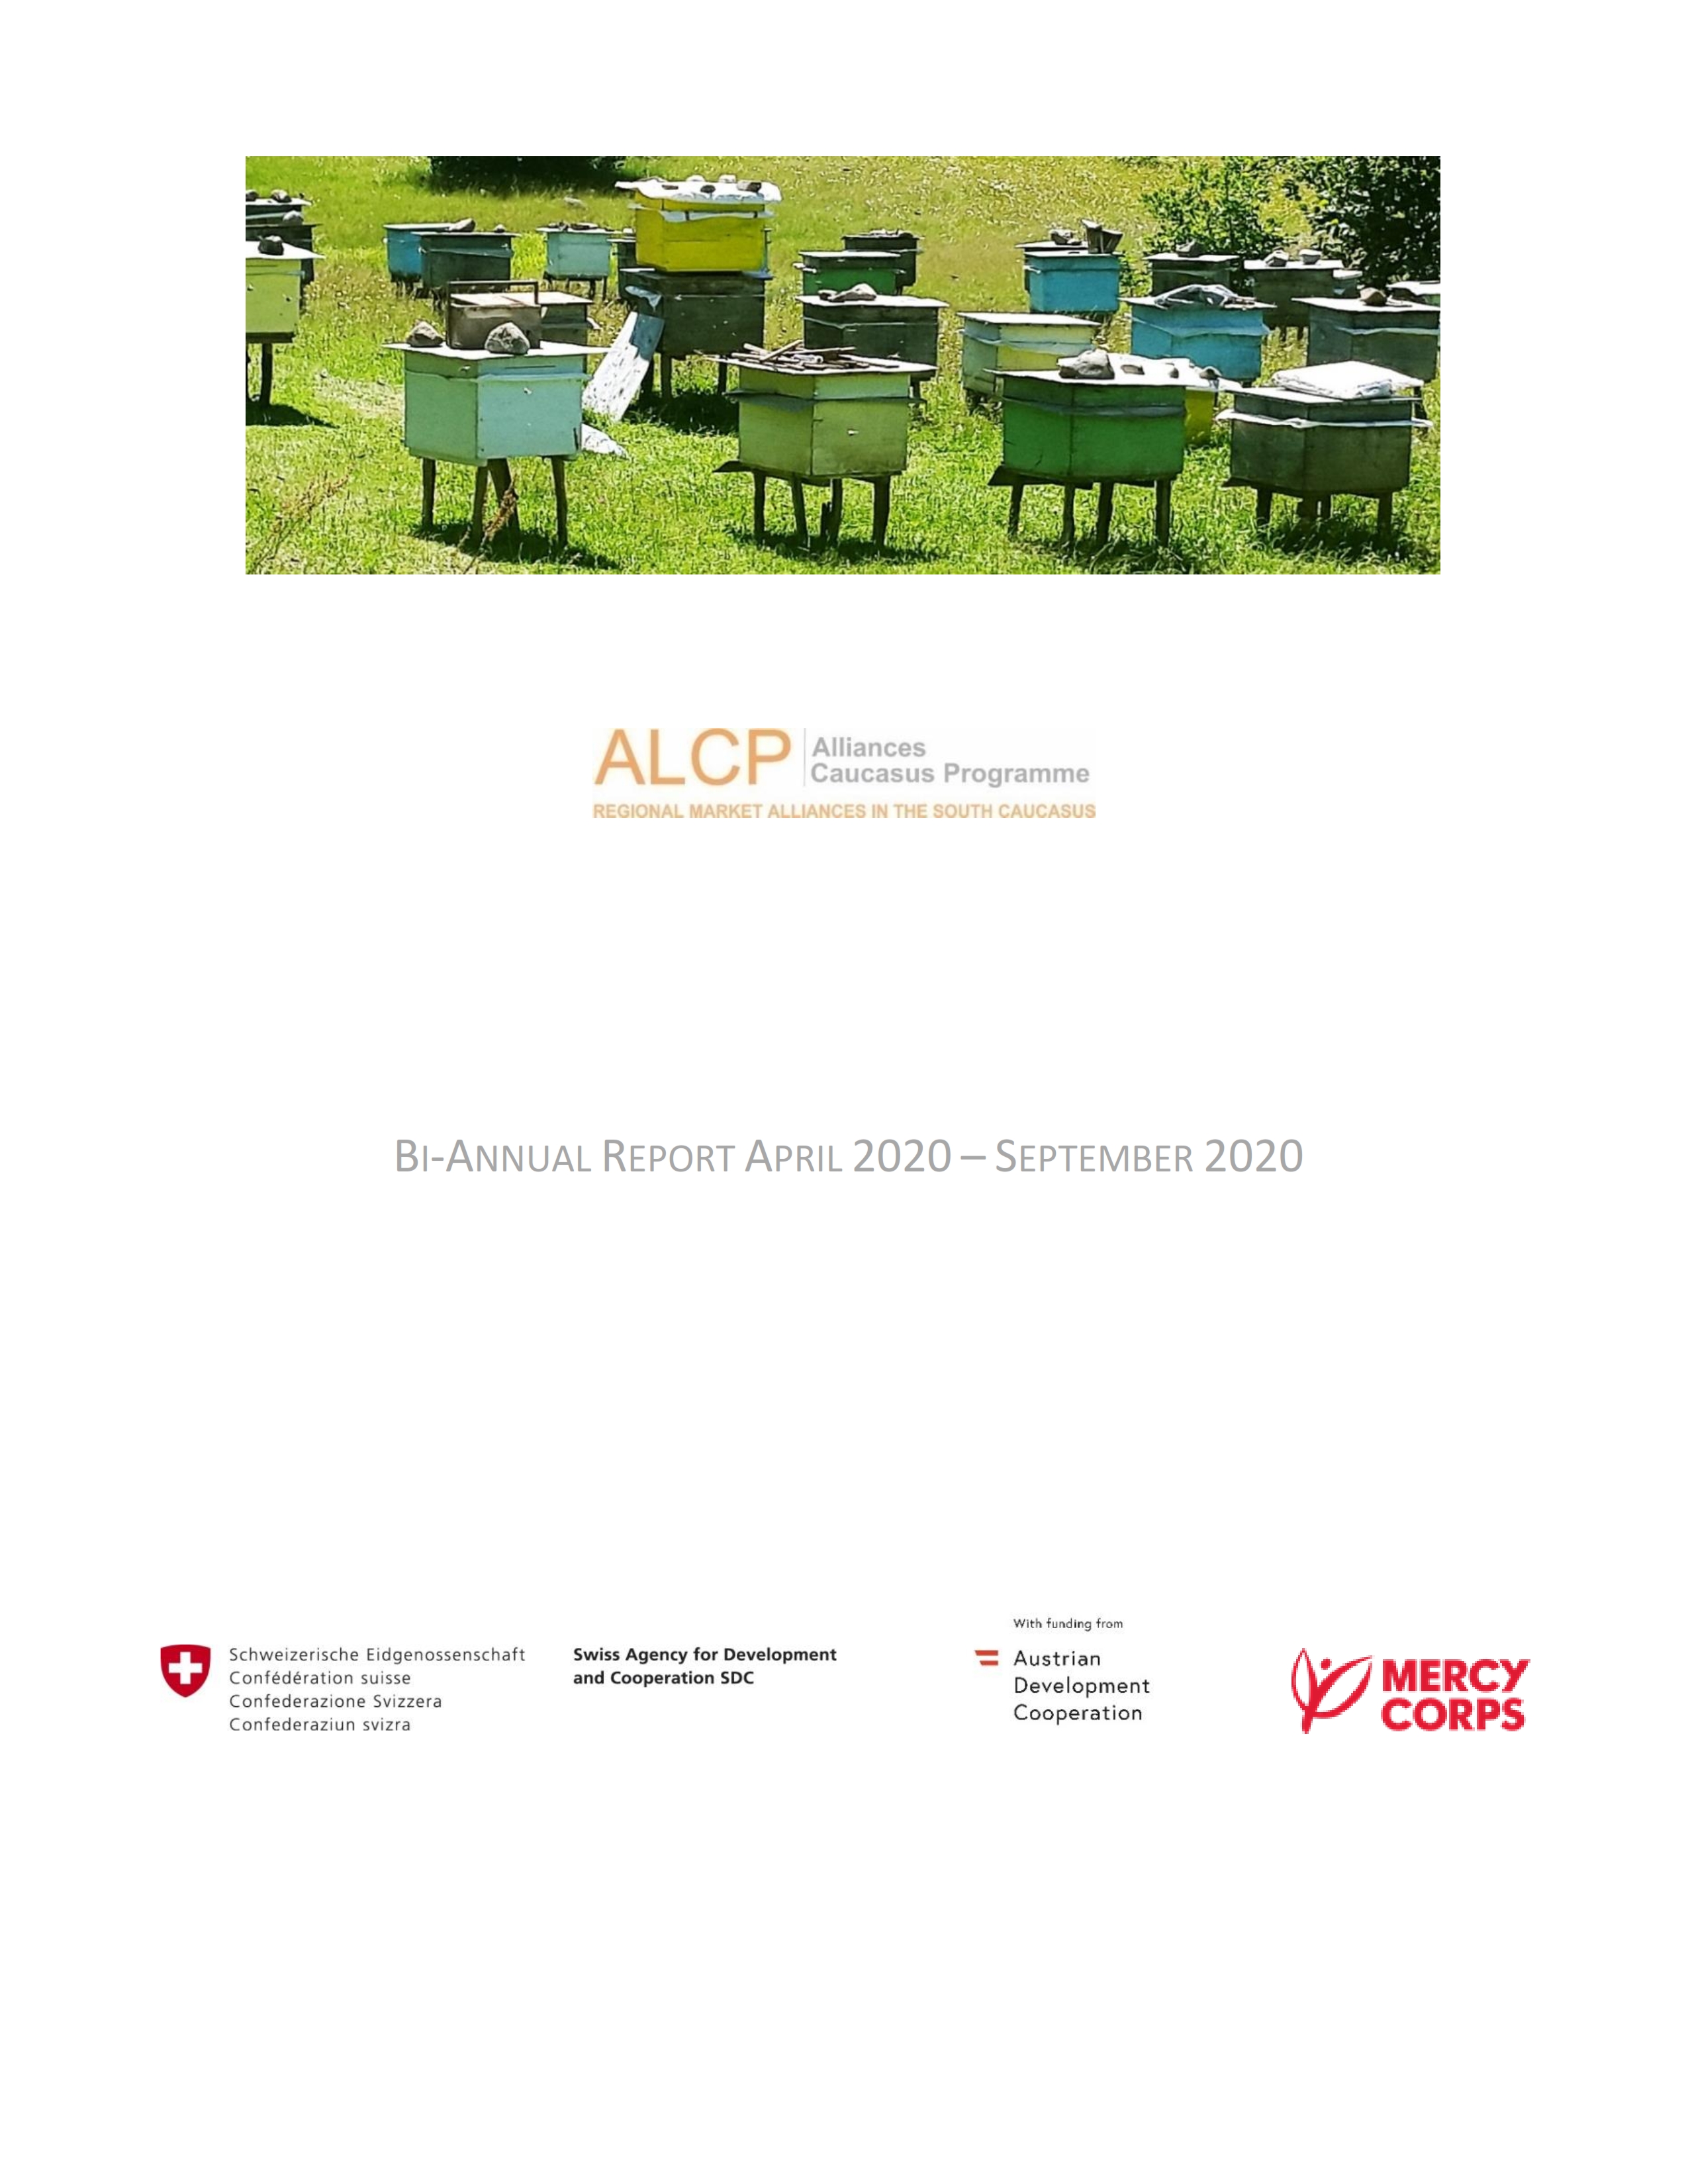 Bi Annual Report April 2020 to September 2020